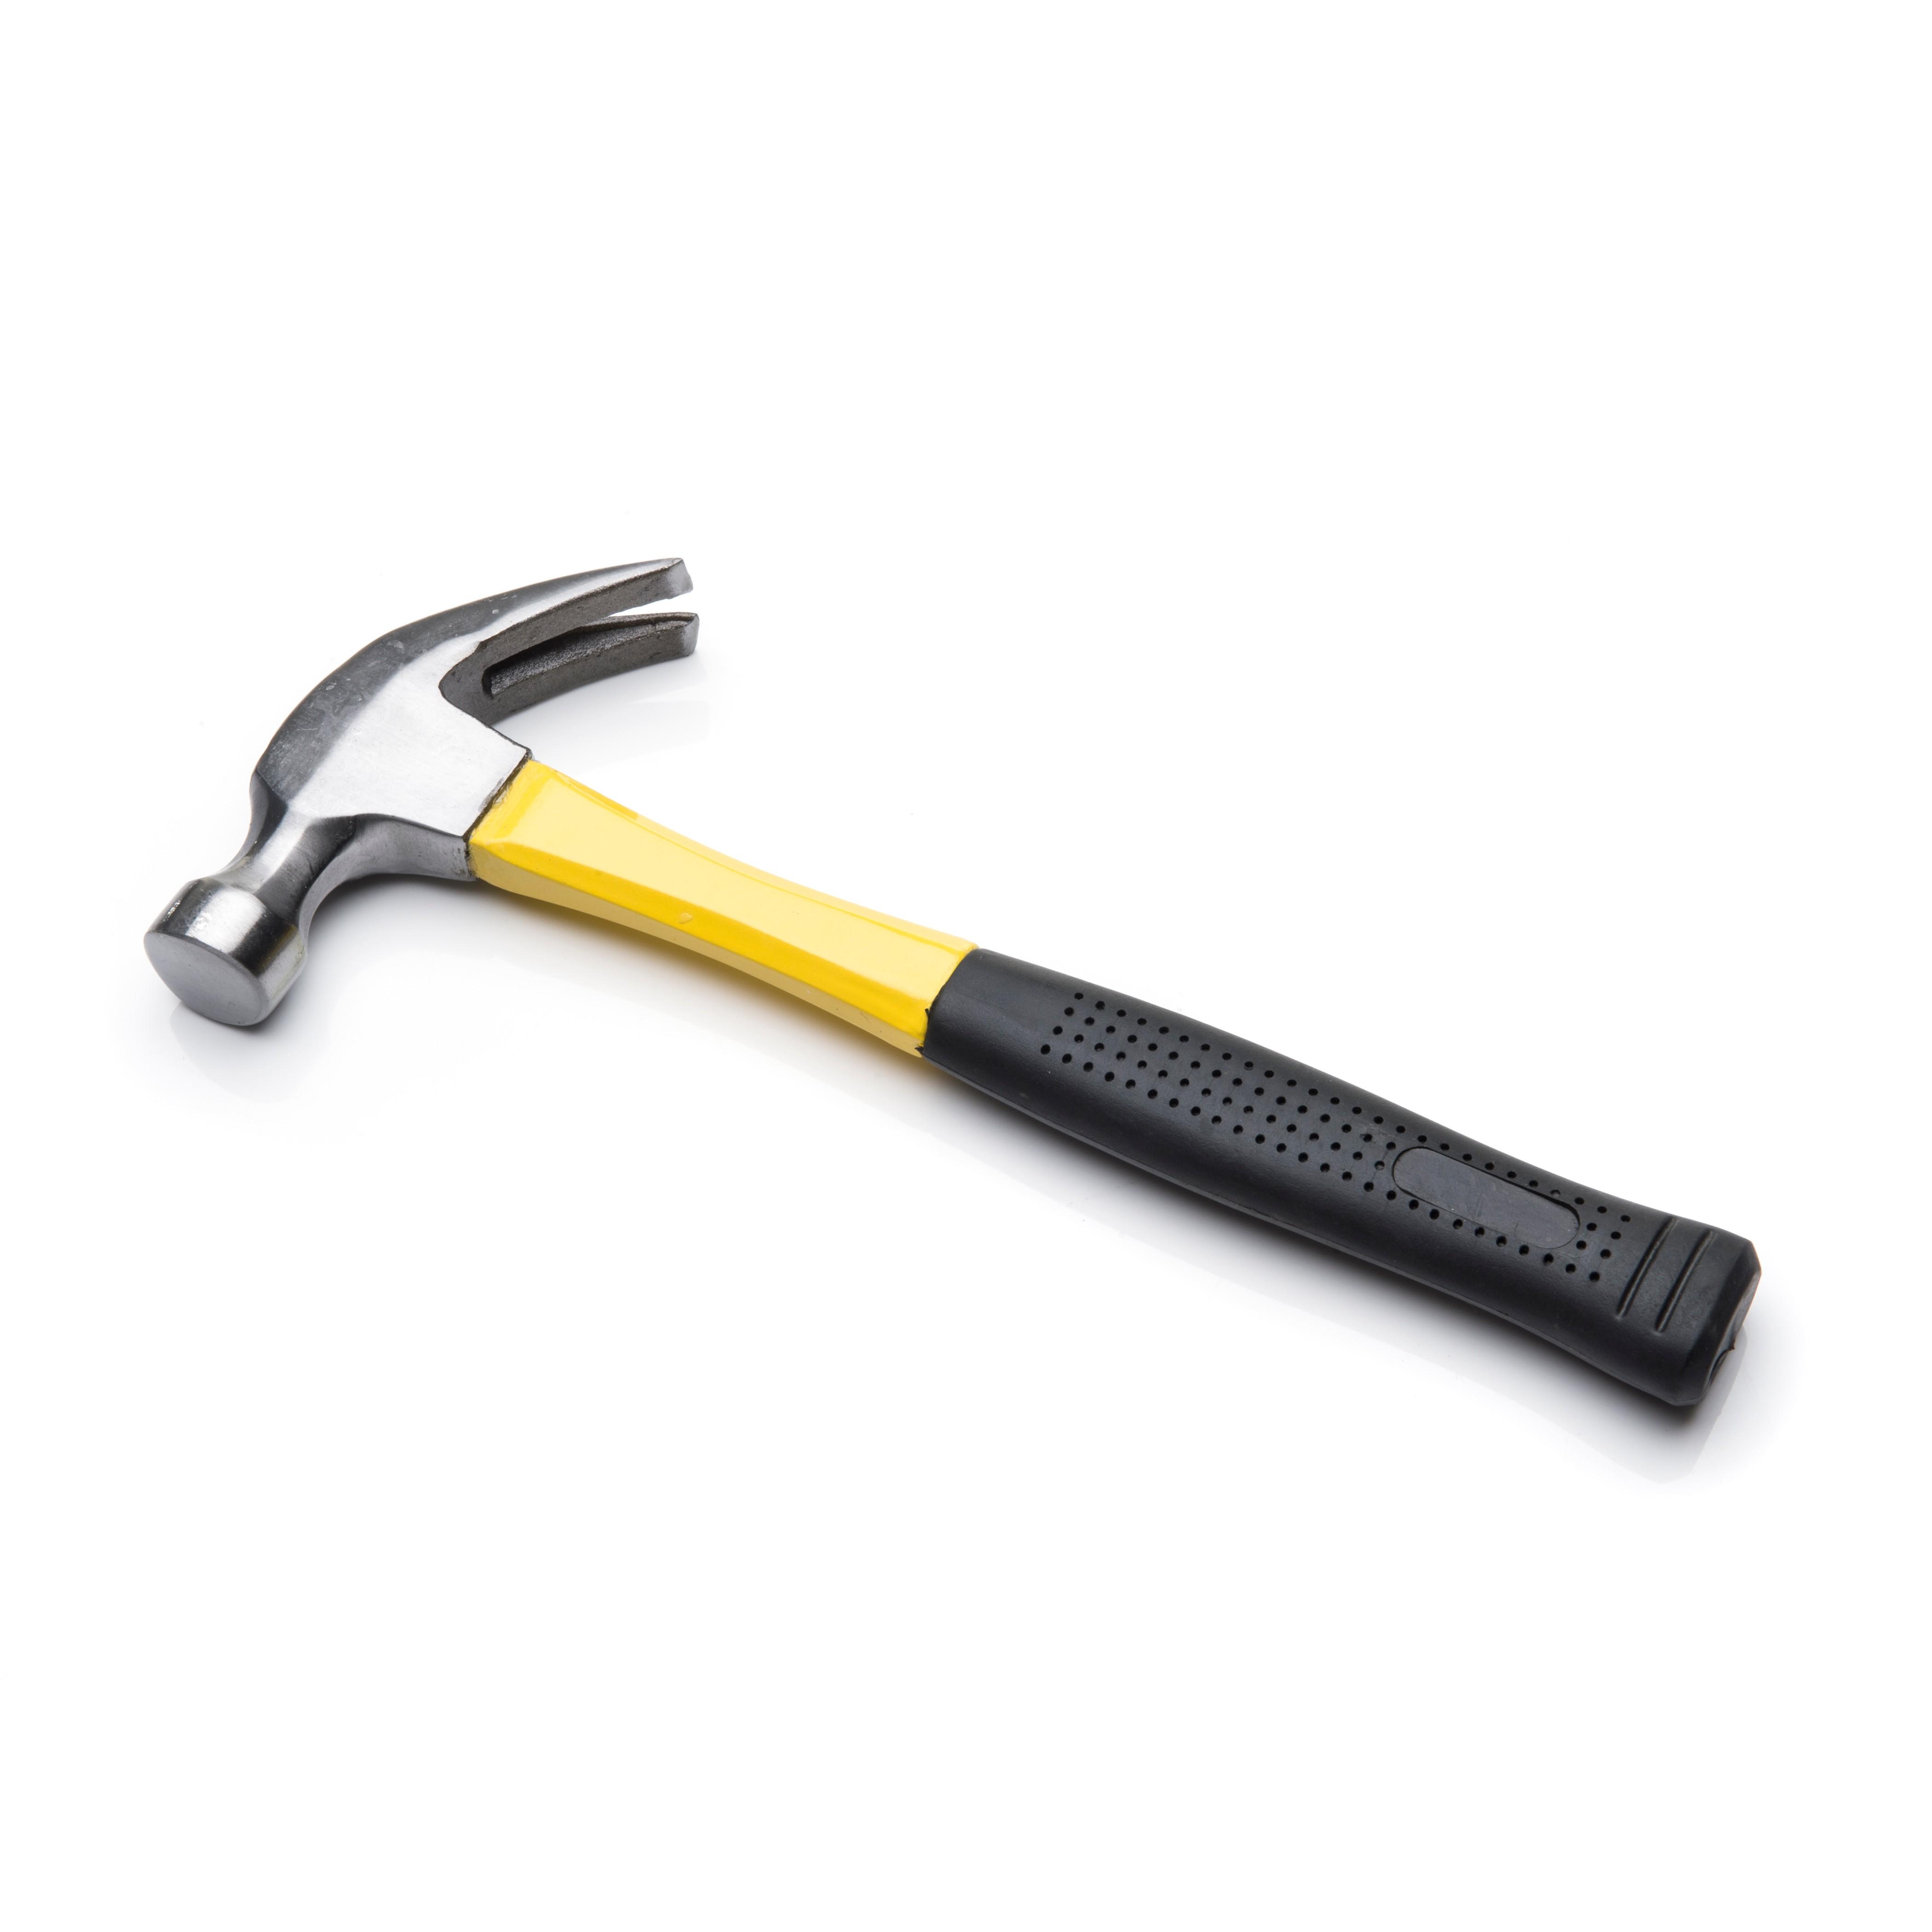 ATR047 - 16oz Claw Hammer